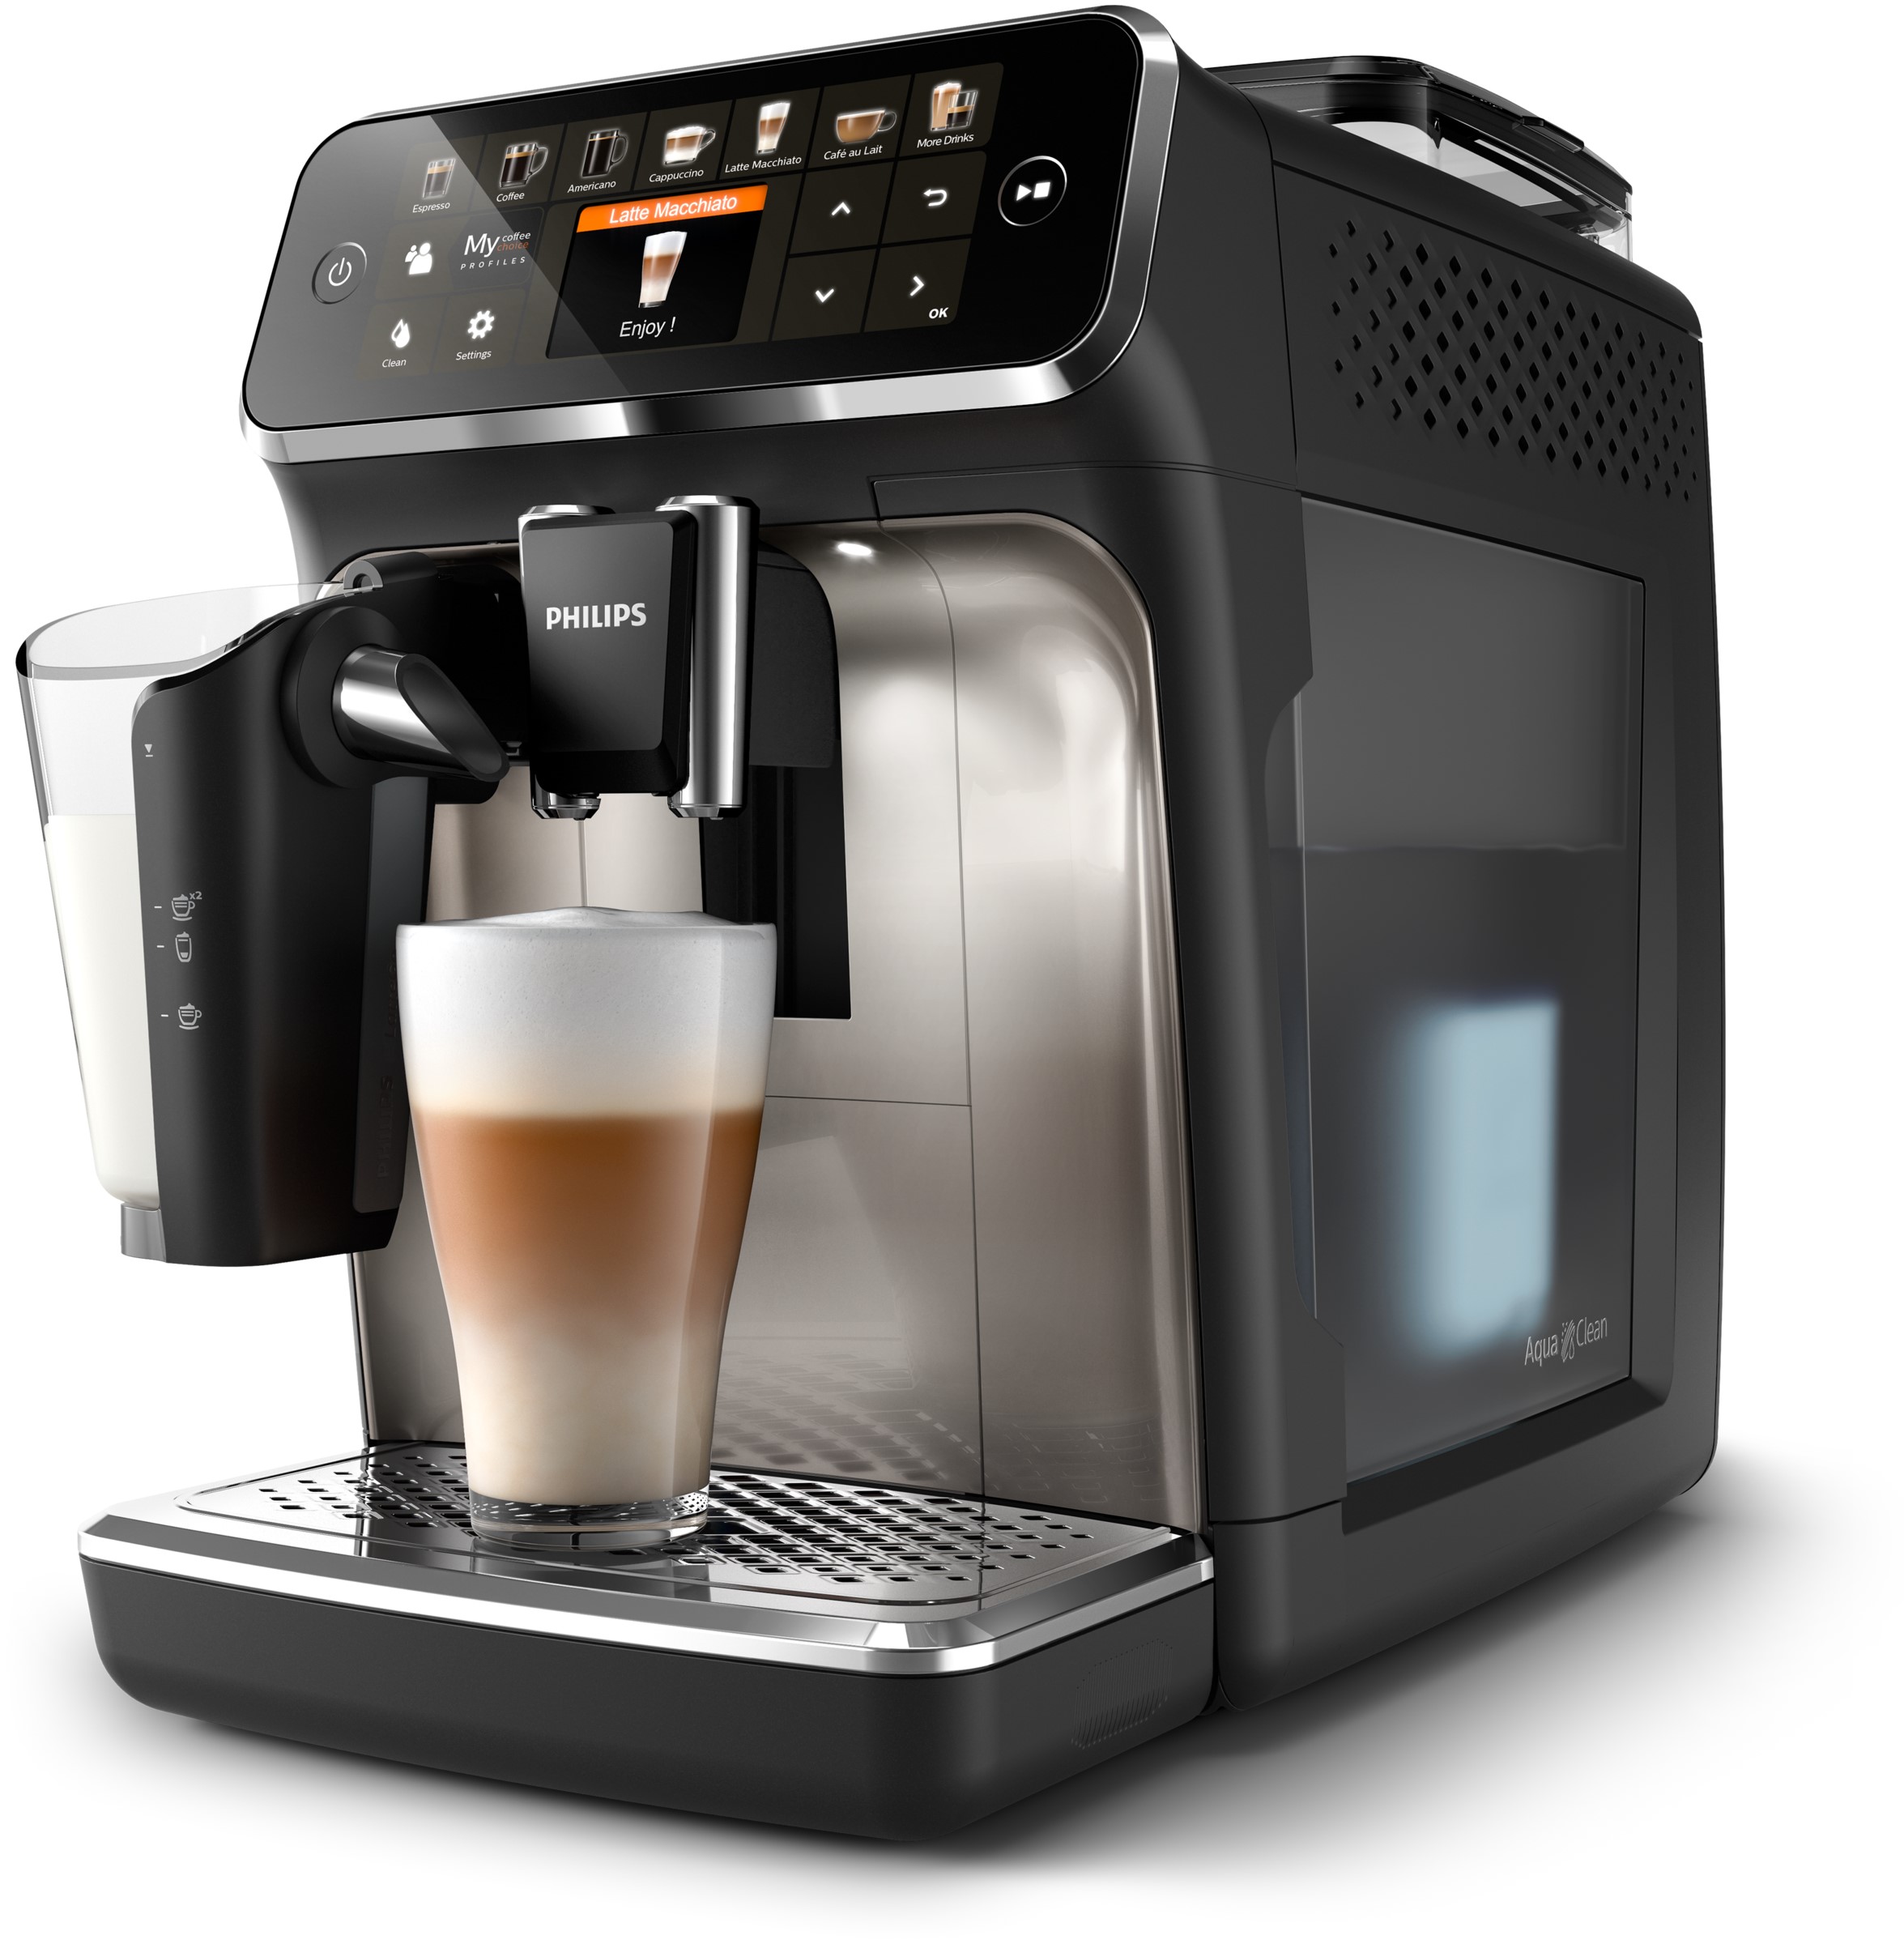 thuis maar 12 verschillende koffievariaties met de Philips 5400 Series espressomachine - Nieuws | Philips